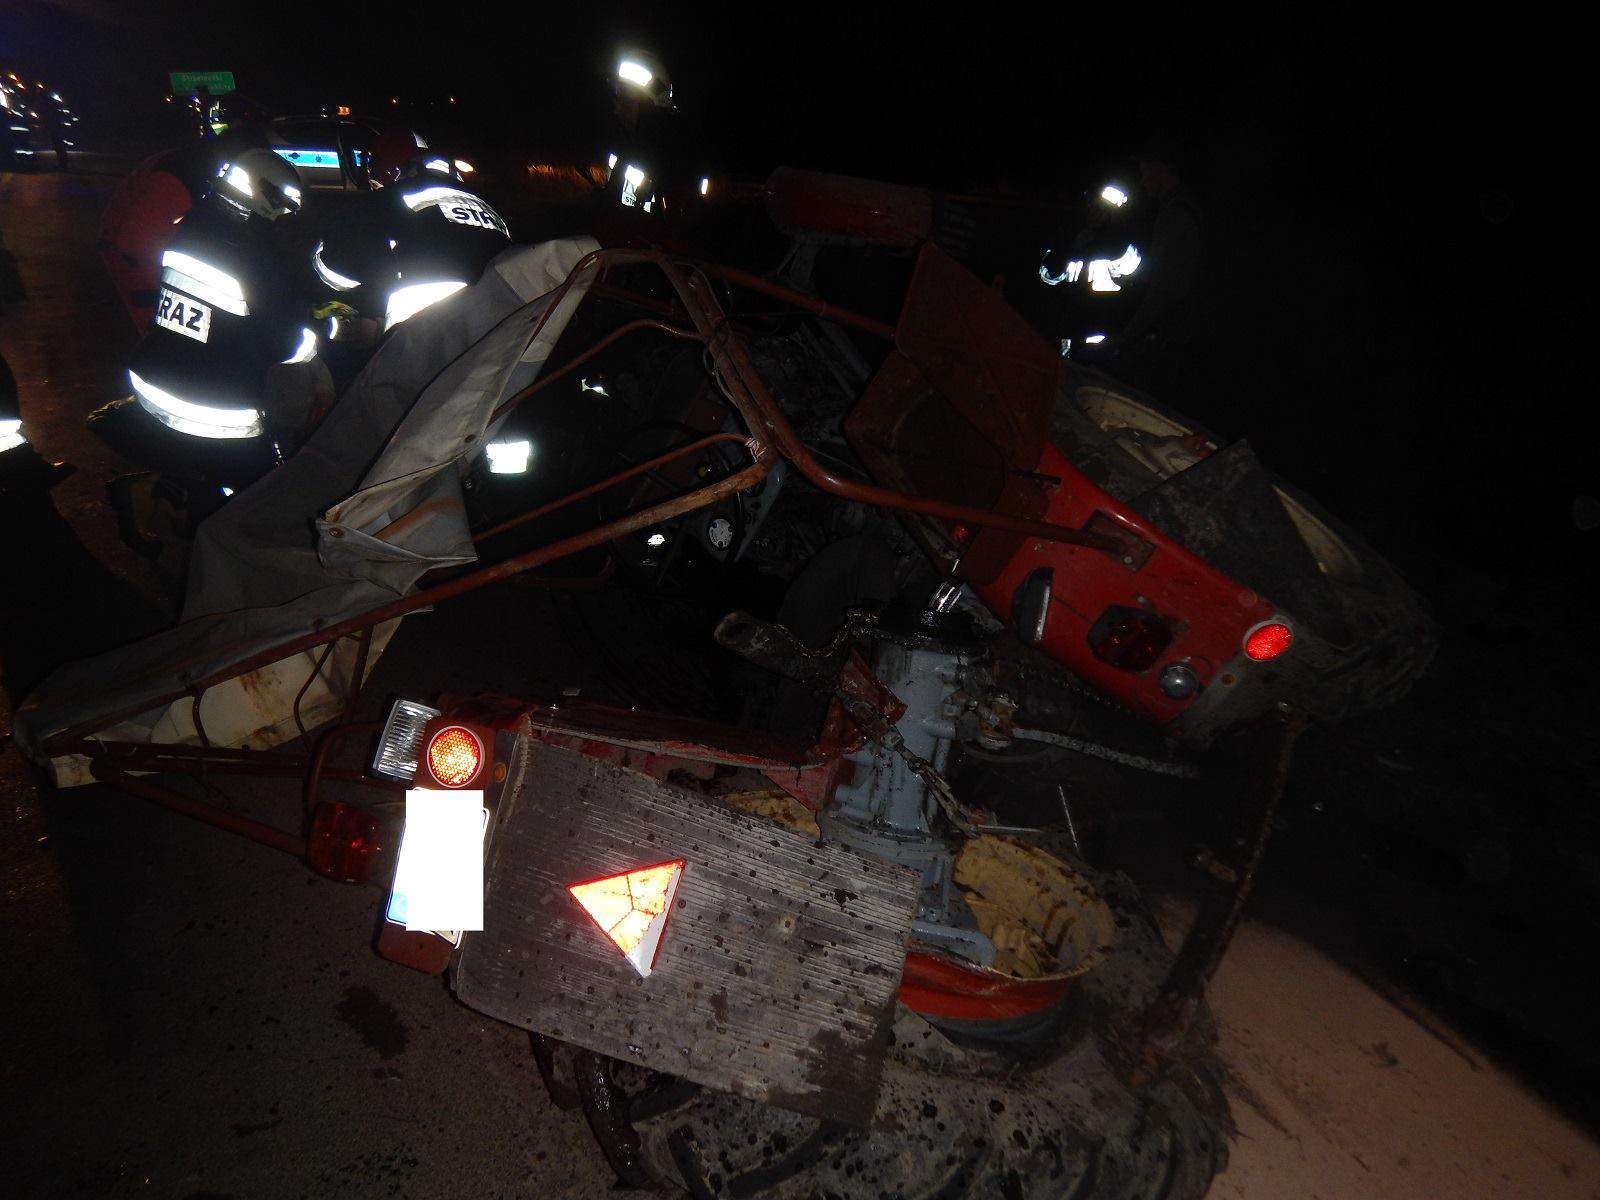 Chevrolet roztrzaskał ciągnik rolniczy. 33-letni rolnik trafił do szpitala!